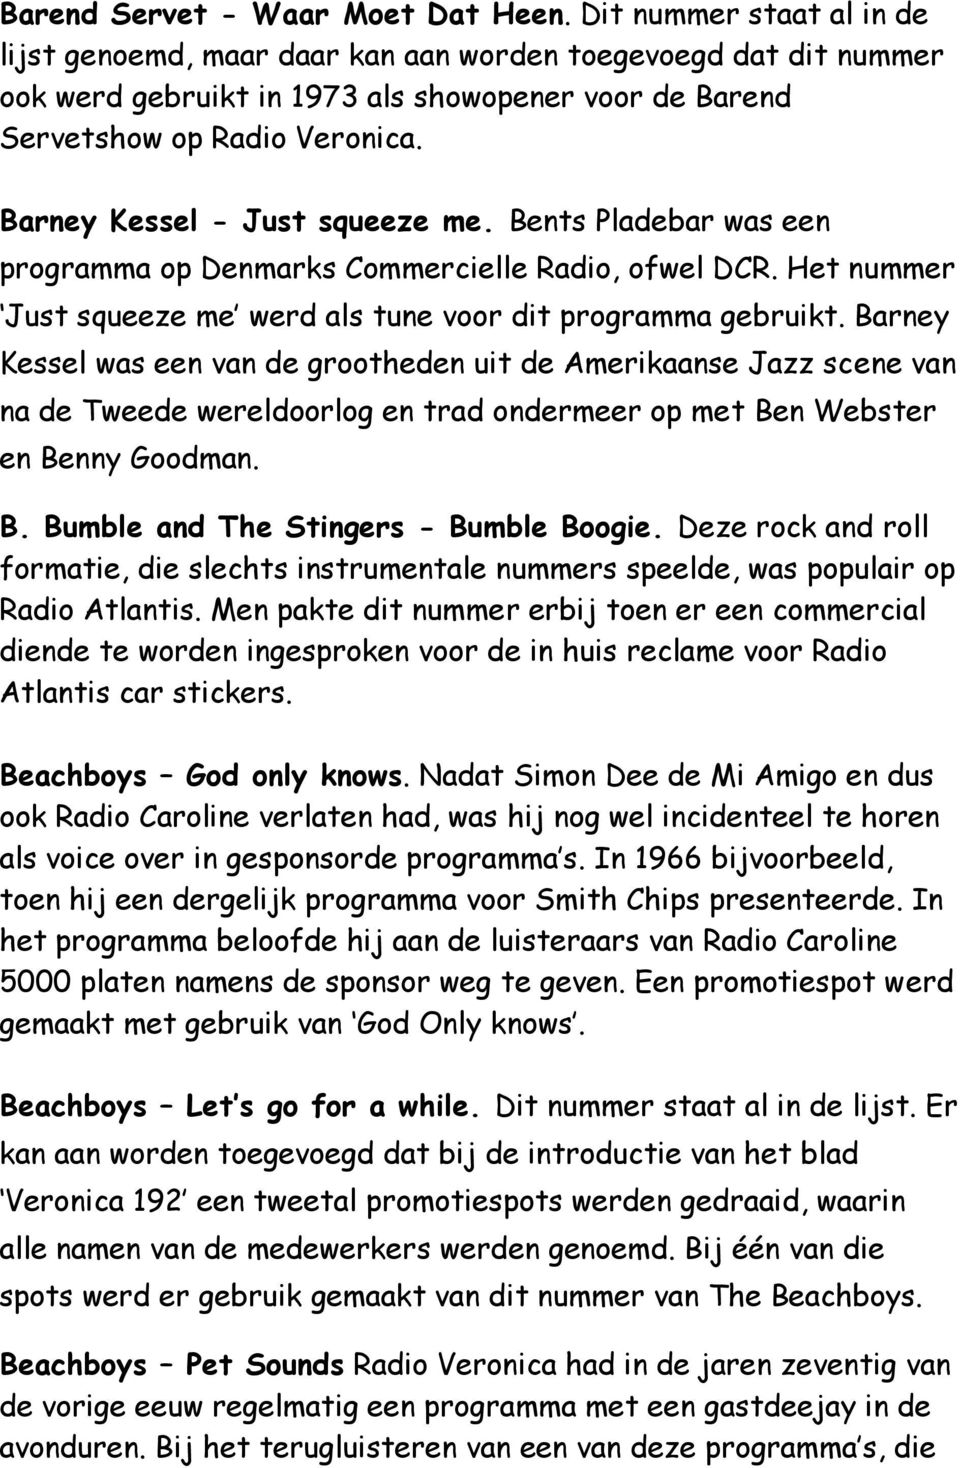 Barney Kessel - Just squeeze me. Bents Pladebar was een programma op Denmarks Commercielle Radio, ofwel DCR. Het nummer Just squeeze me werd als tune voor dit programma gebruikt.